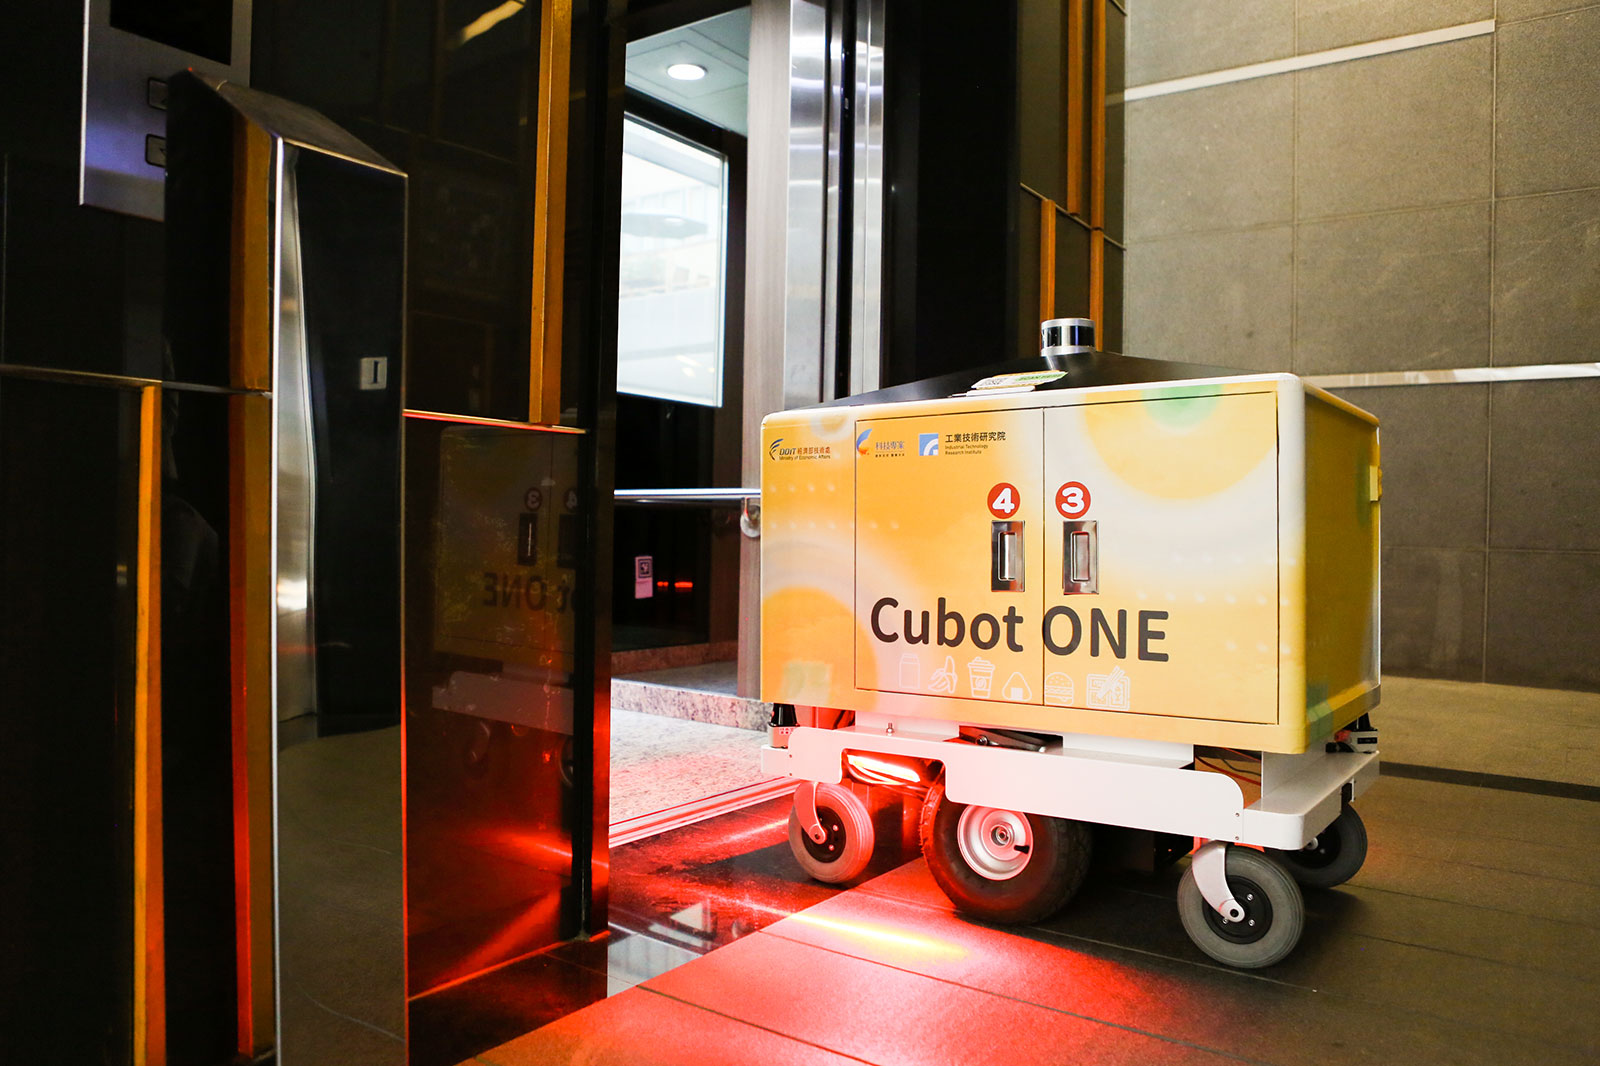 工研院機器人外送員Cubot ONE透過5G連網整合技術，能自主與電梯溝通、進出電梯，完成跨樓層送餐。